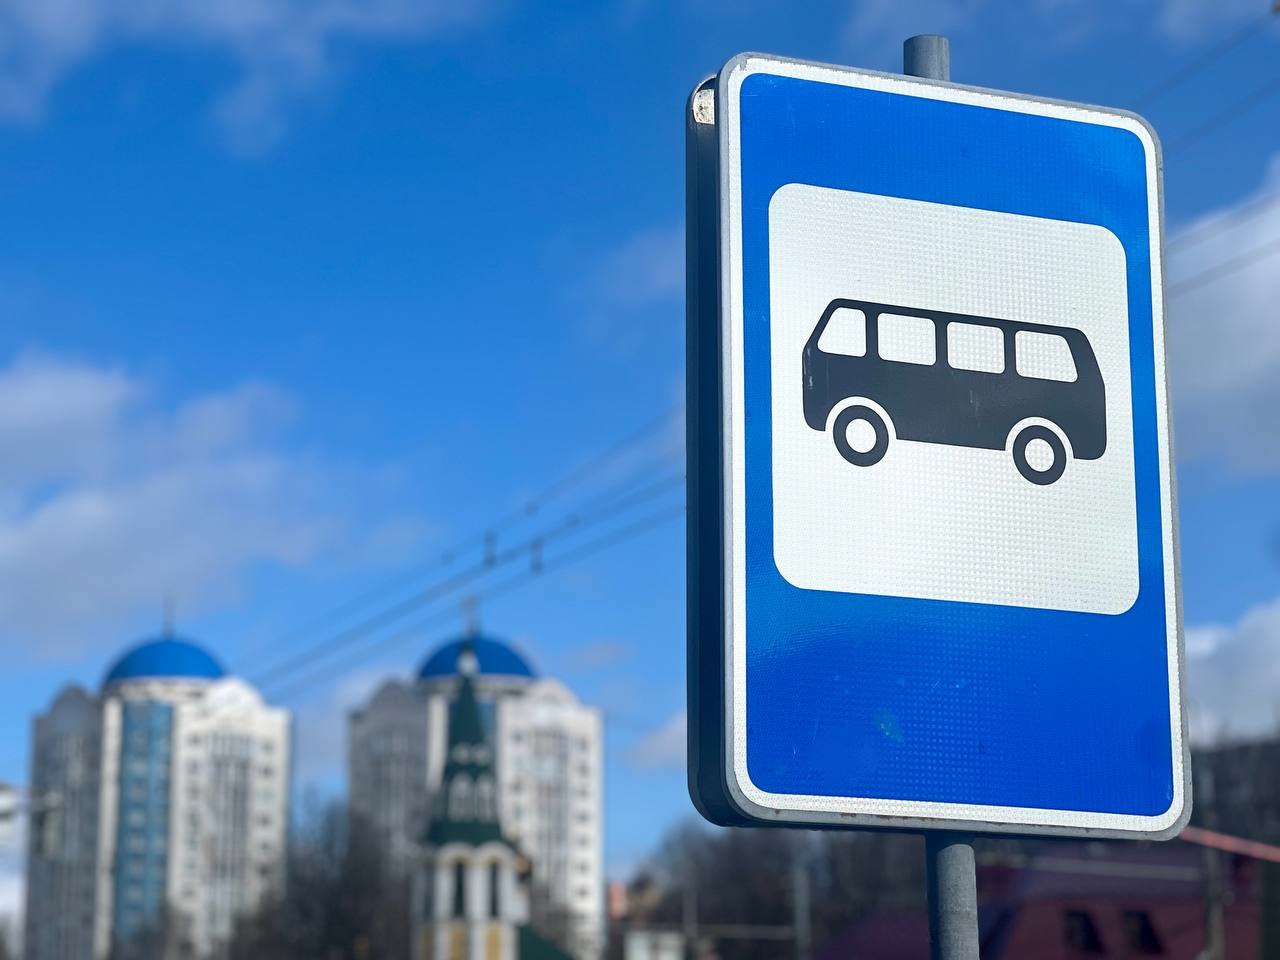 Дополнительная остановка включена в автобусный маршрут №117 в Ярославле